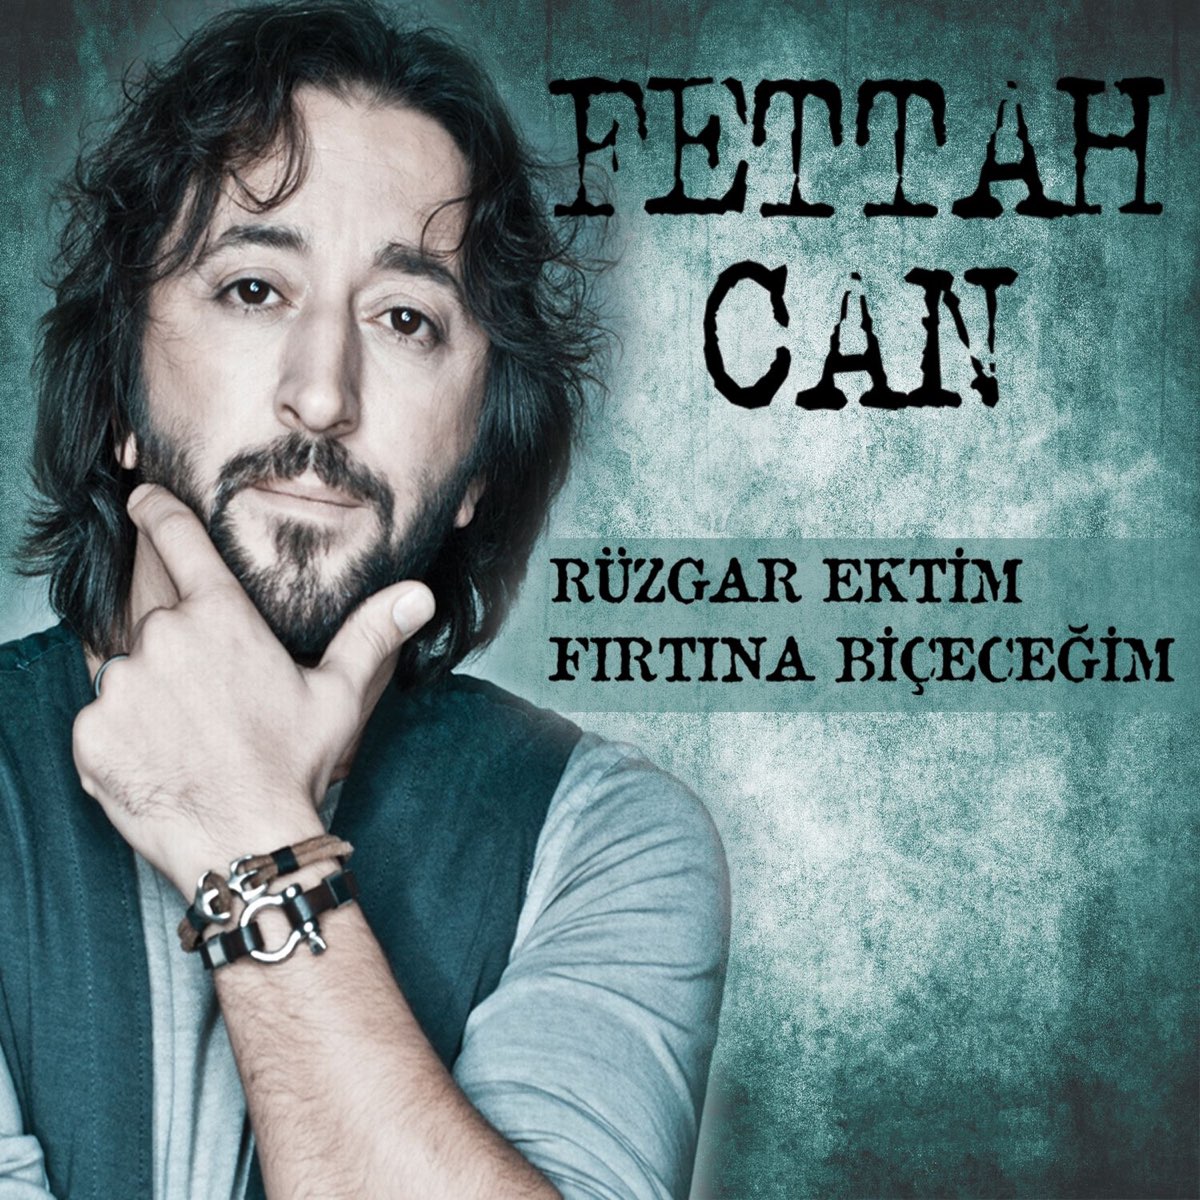 Rüzgar Ektim Fırtına Biçeceğim - Single - Album by Fettah Can - Apple Music